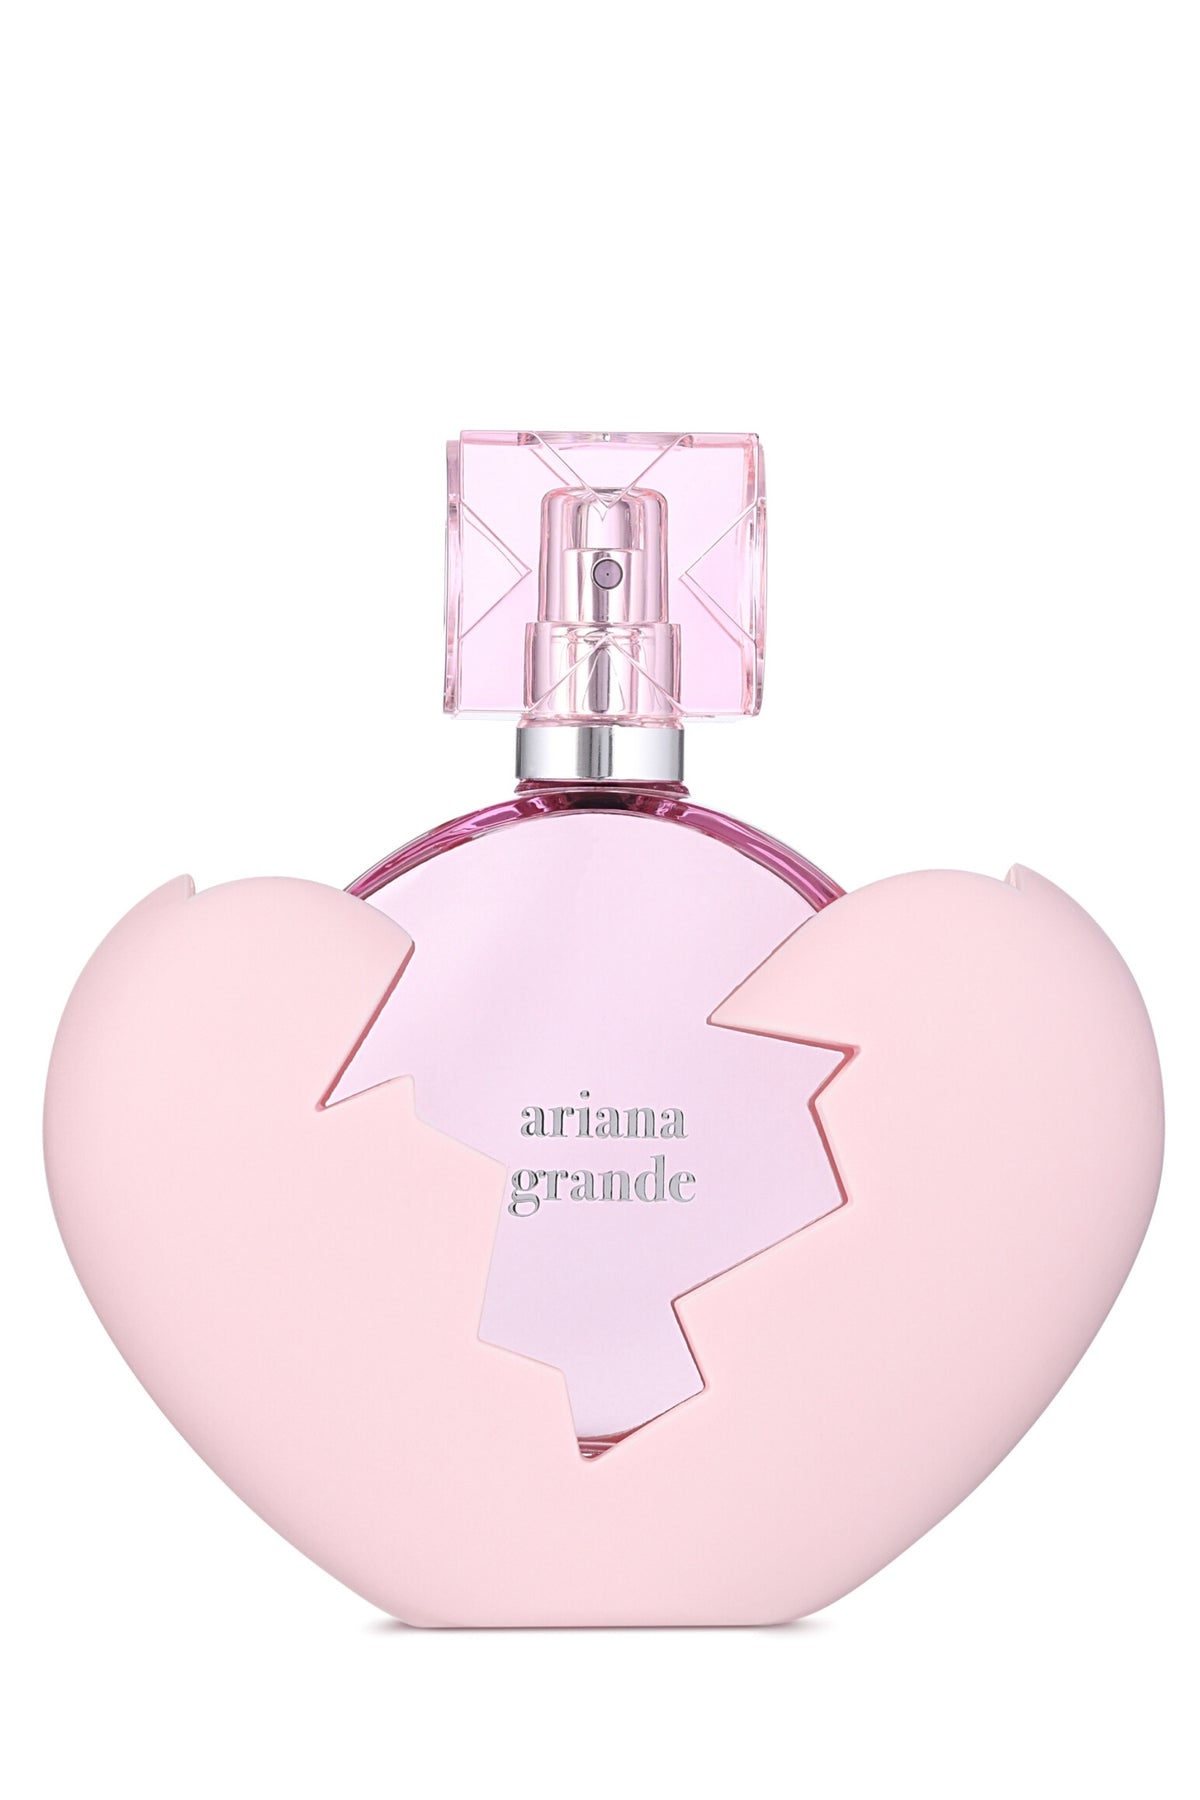 Ariana Grande | Thank U Next Eau de Parfum - REBL